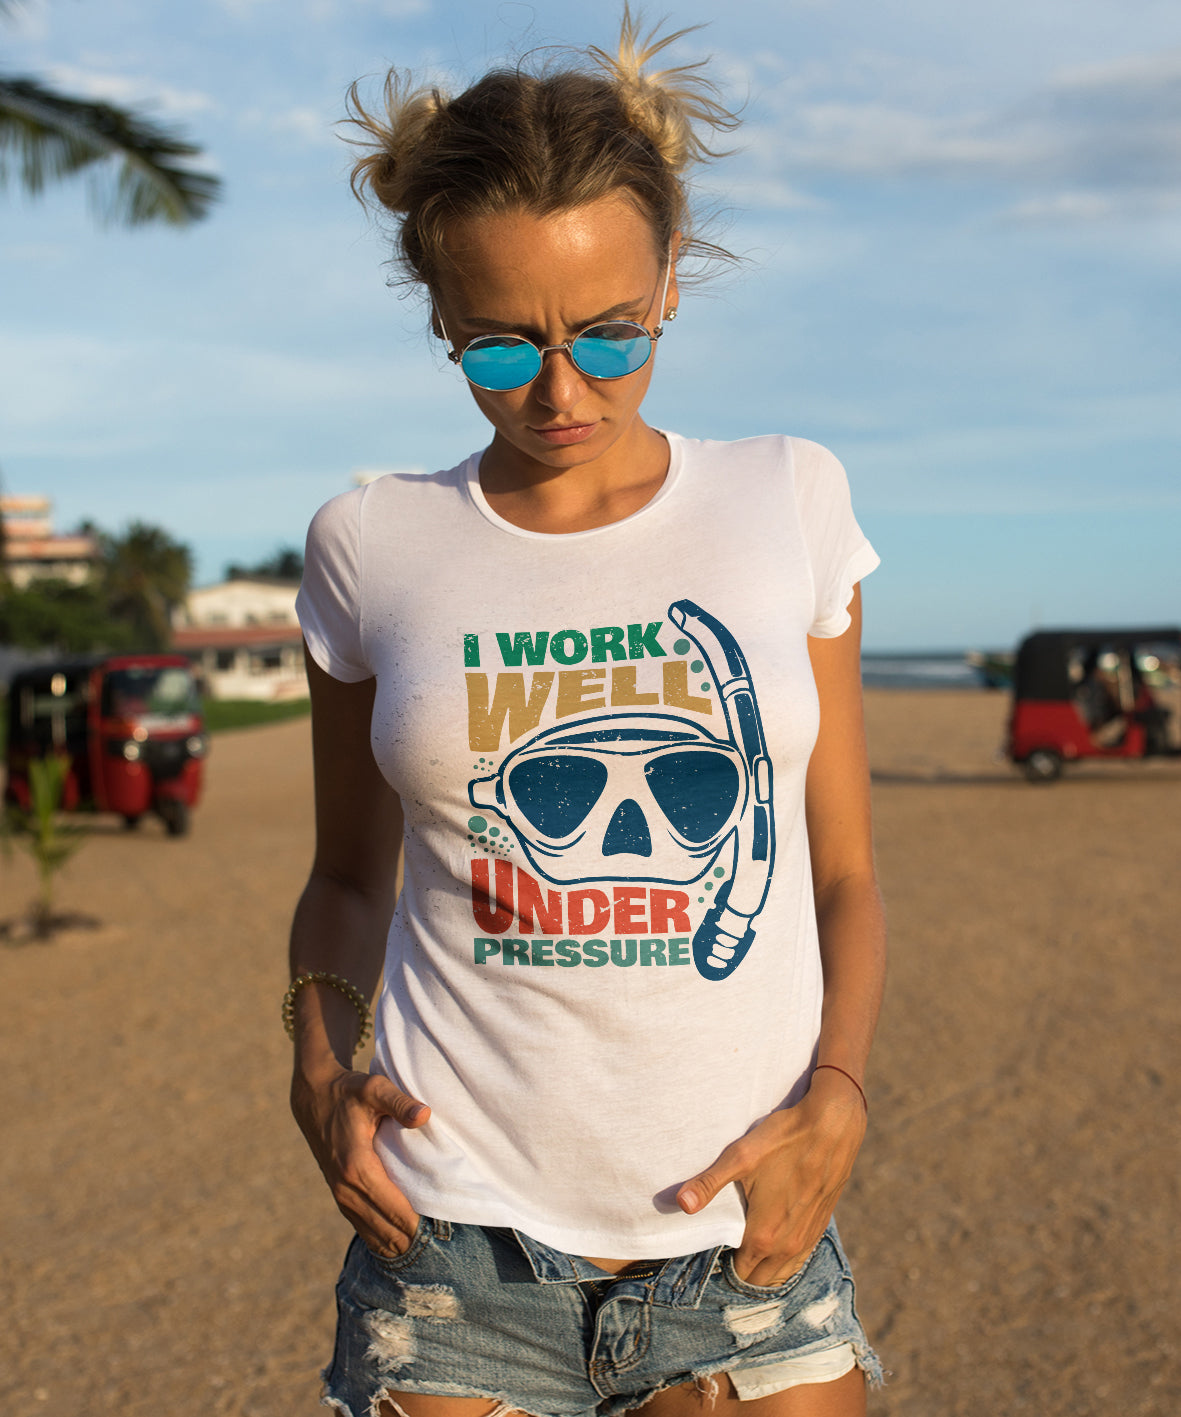 T-shirt "UNDER PRESSURE"